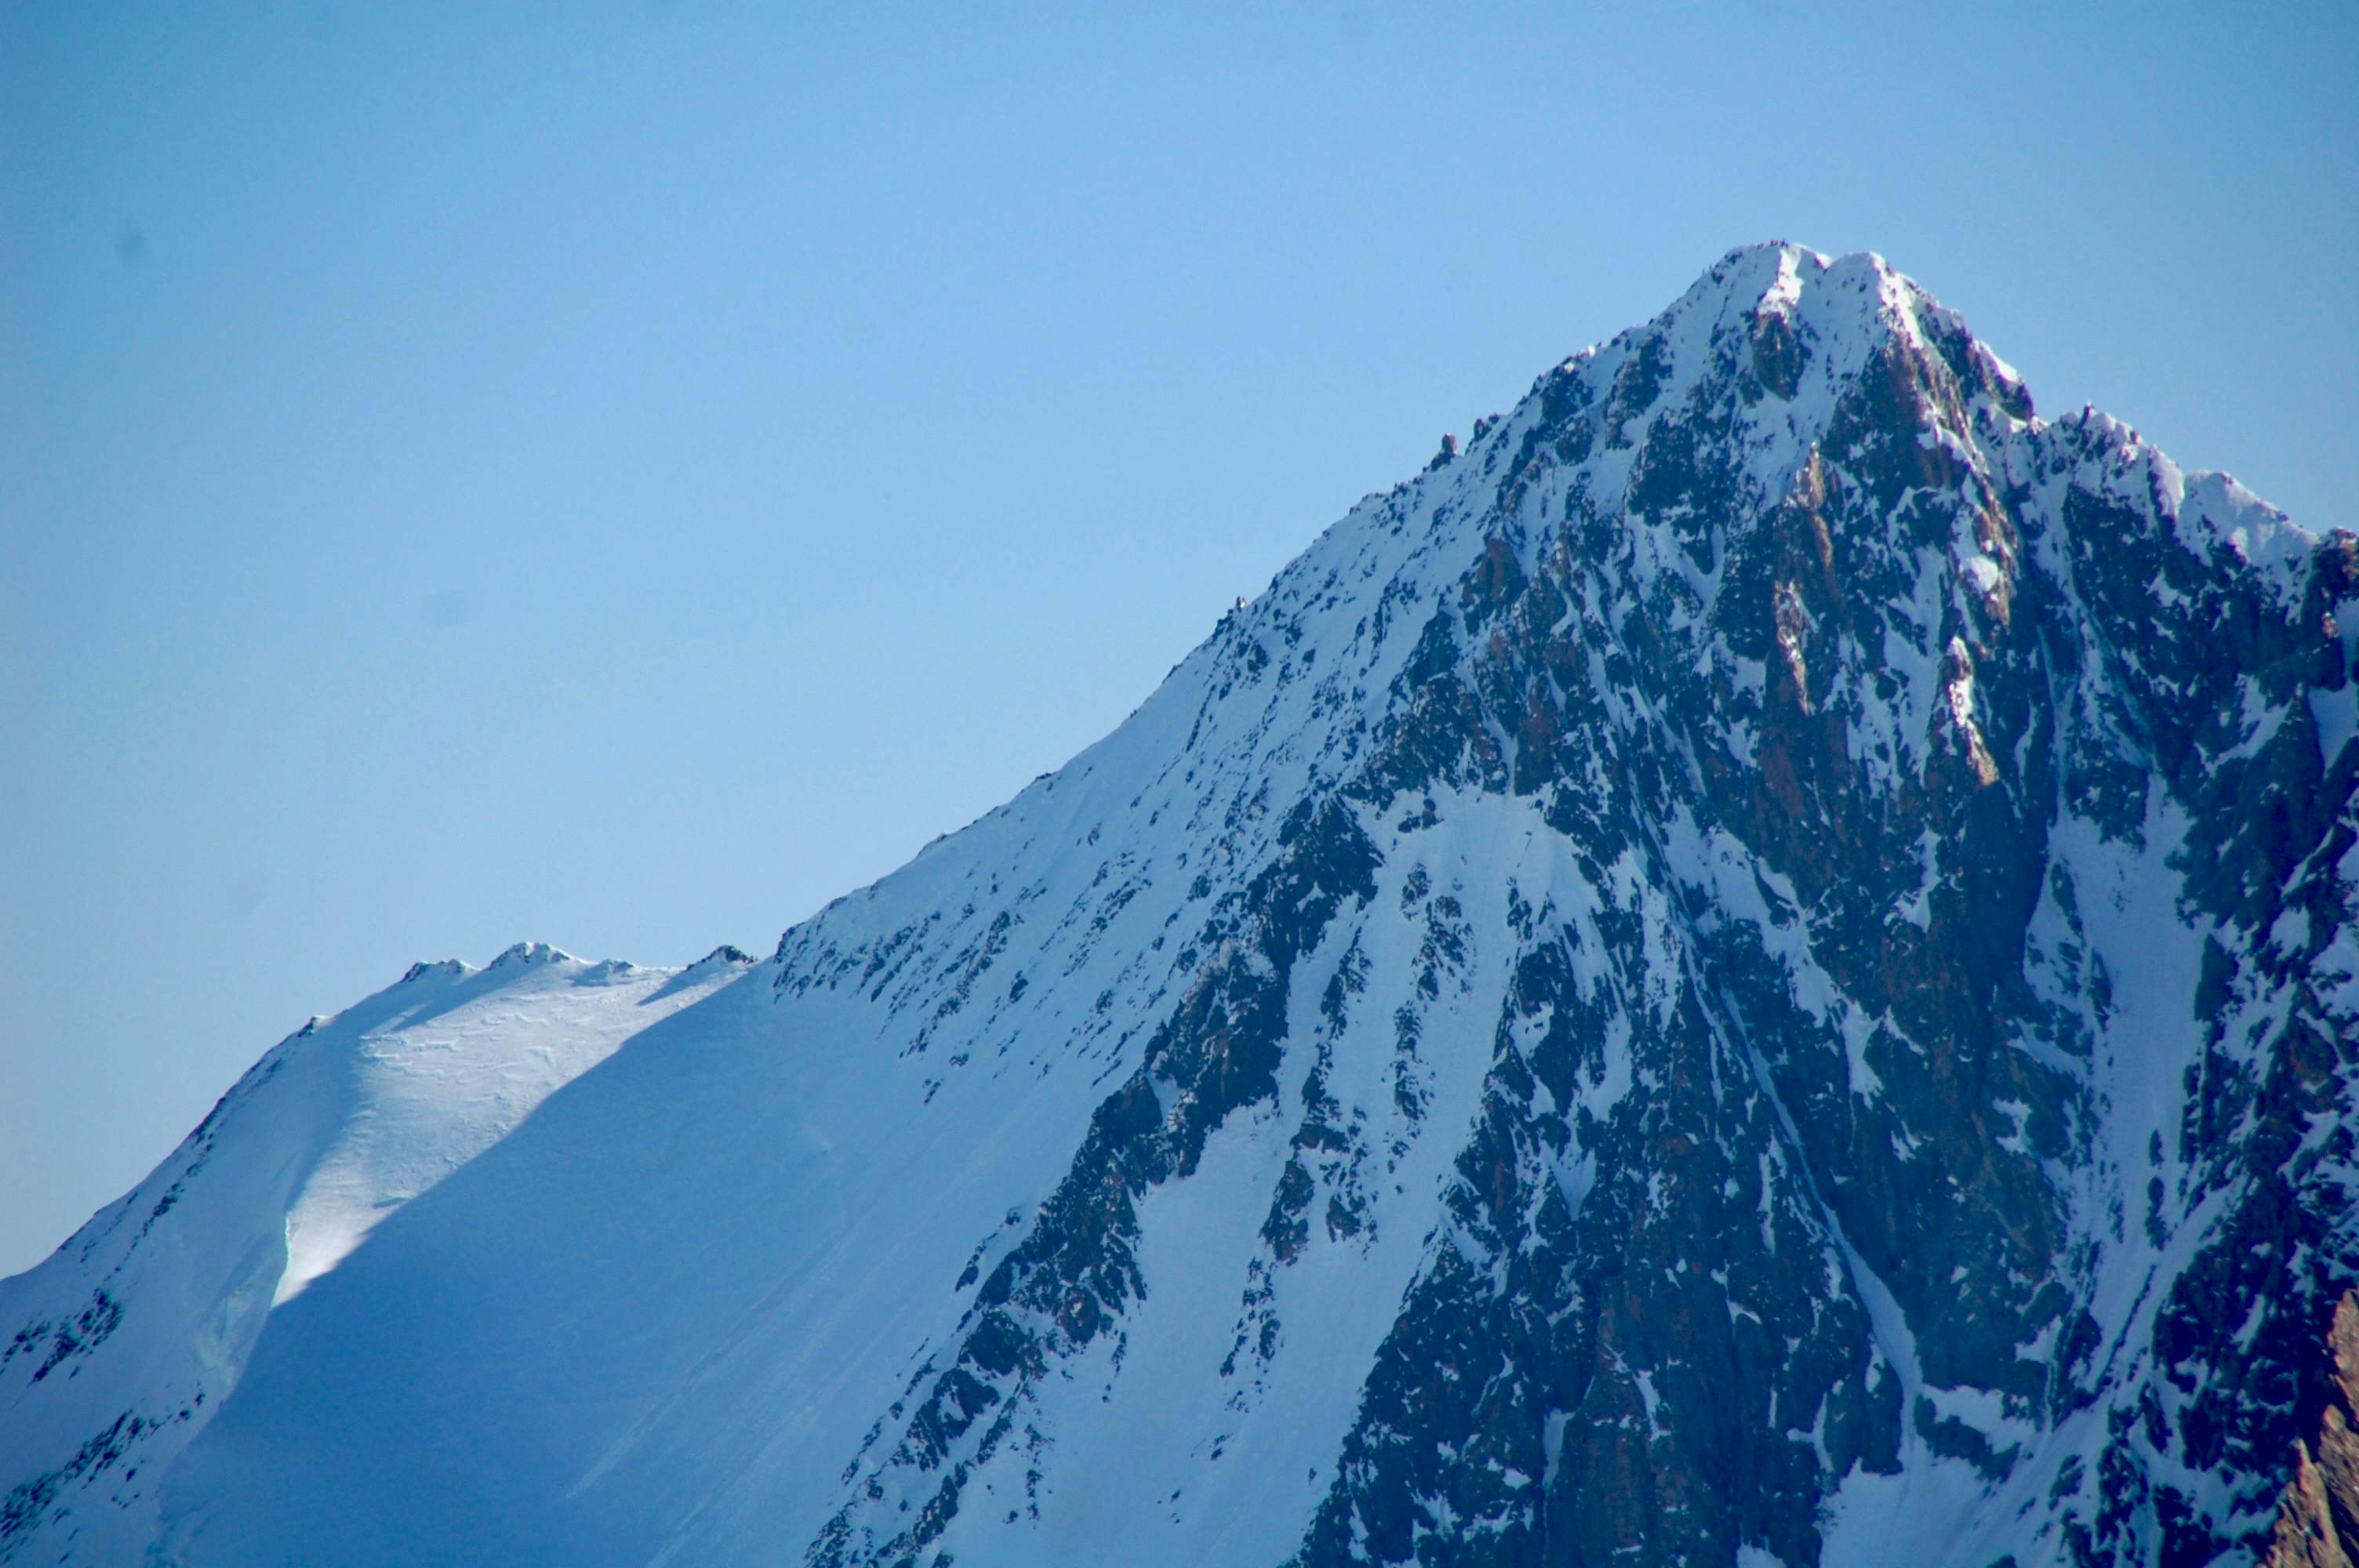 Detailaufnahme Finsteraarhorn vom Gross Wannenhorn. Mit den Skis steigt man bis zum flachen Gratstück an der Sonne (Hugisattel) hoch.